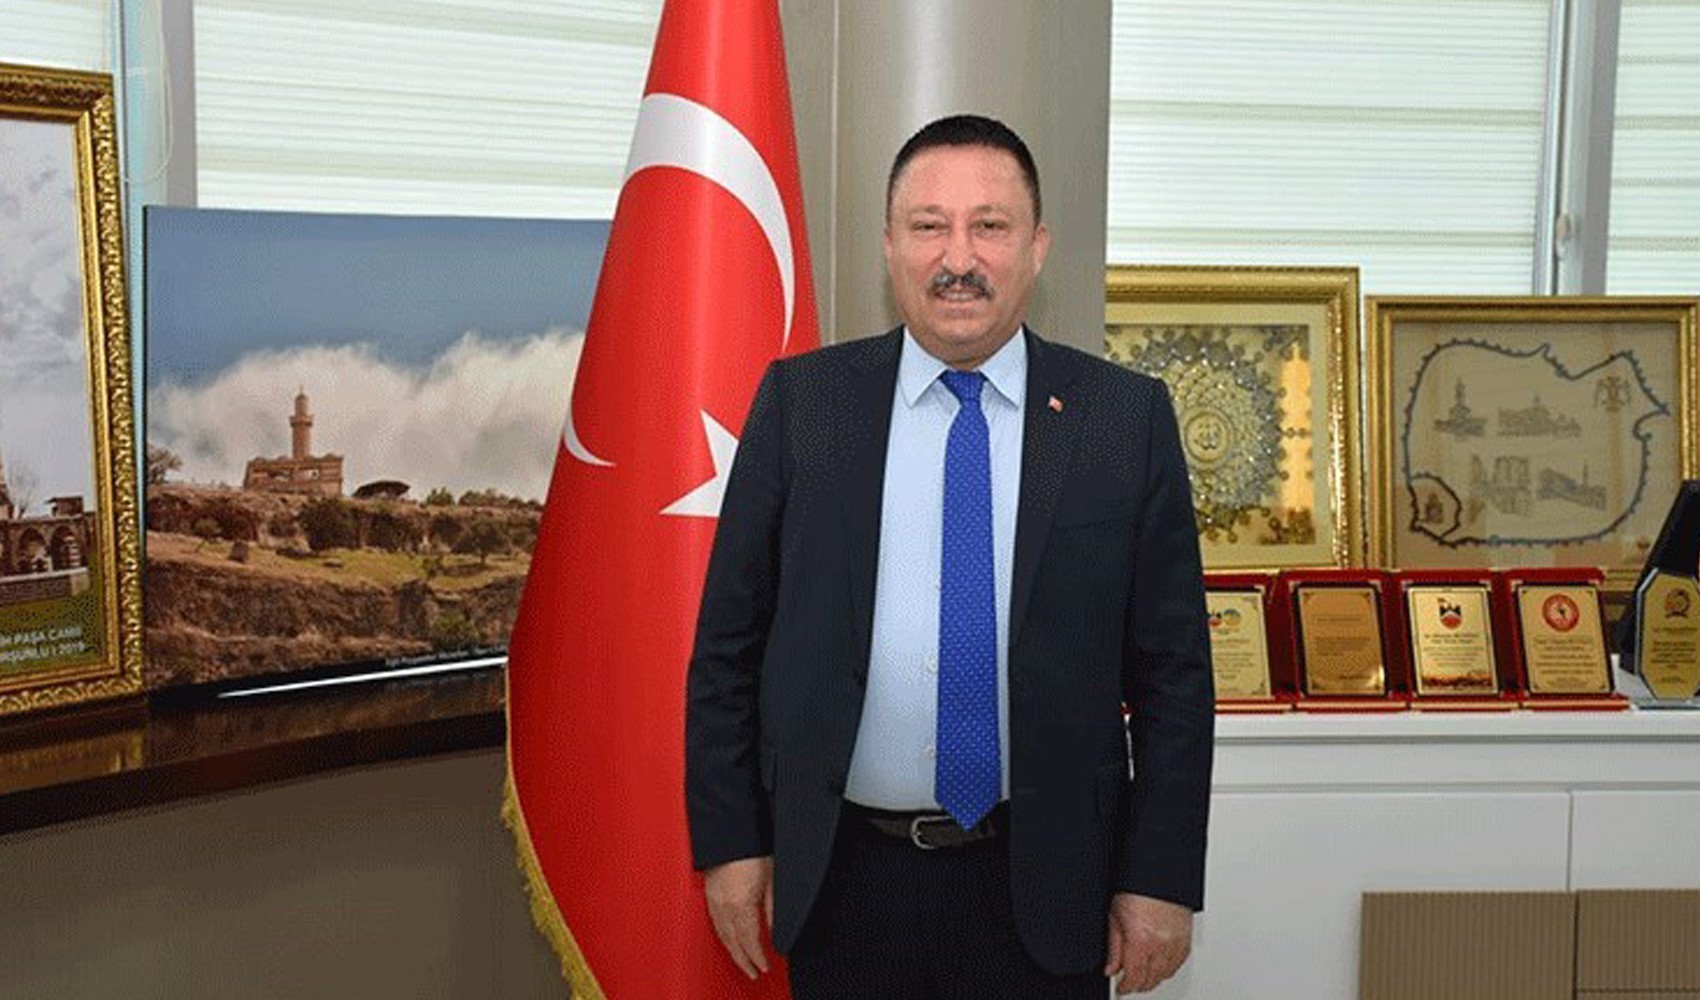 Güne Erdoğan'ı selamlamadan başlayamayan AKP'li isim hakkında tutuklama kararı